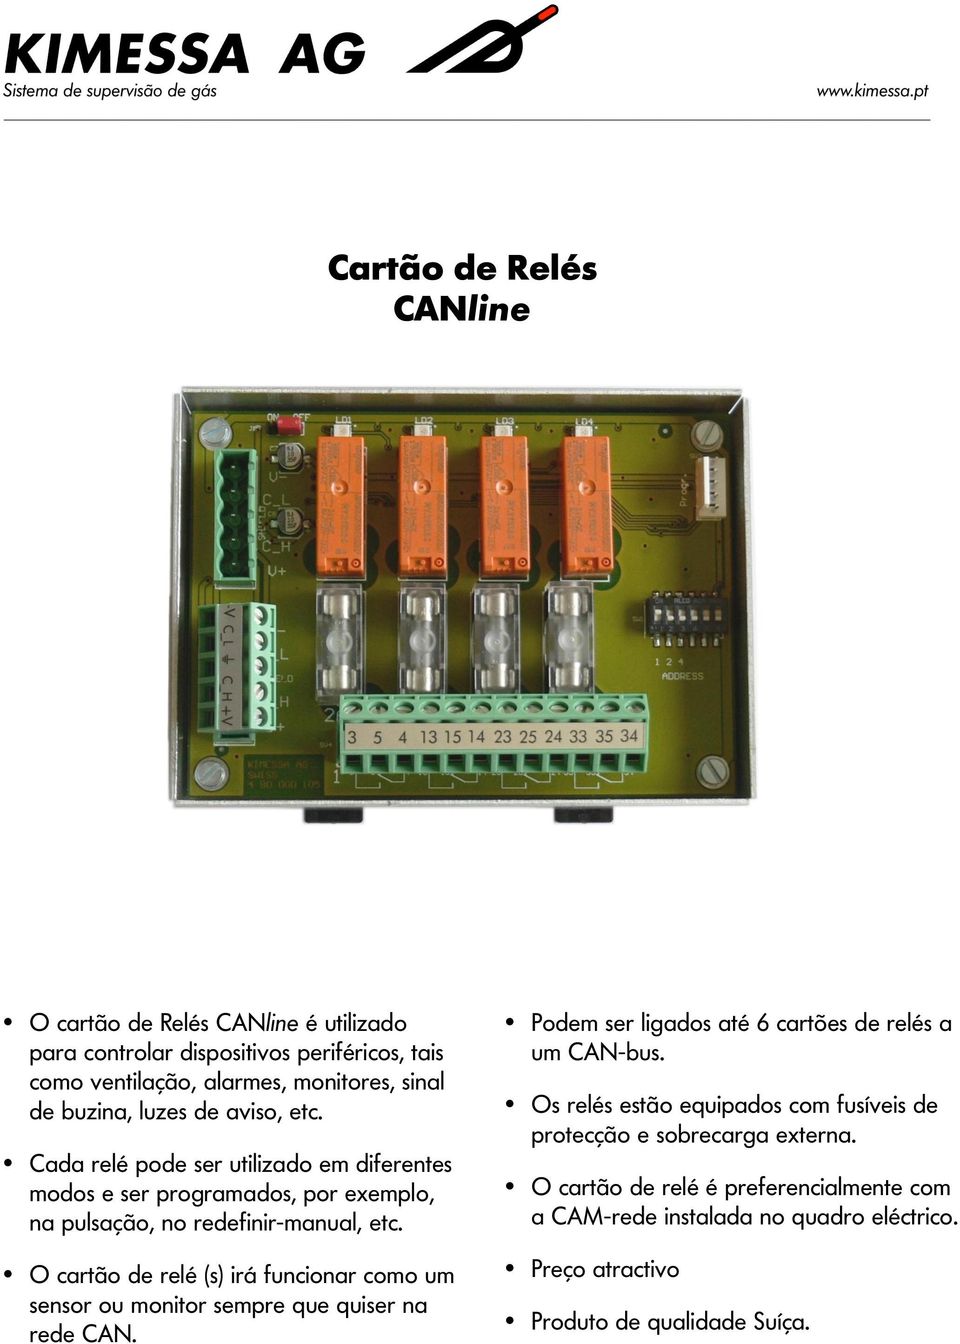 O cartão de relé (s) irá funcionar como um sensor ou monitor sempre que quiser na rede CAN. Podem ser ligados até 6 cartões de relés a um CAN-bus.